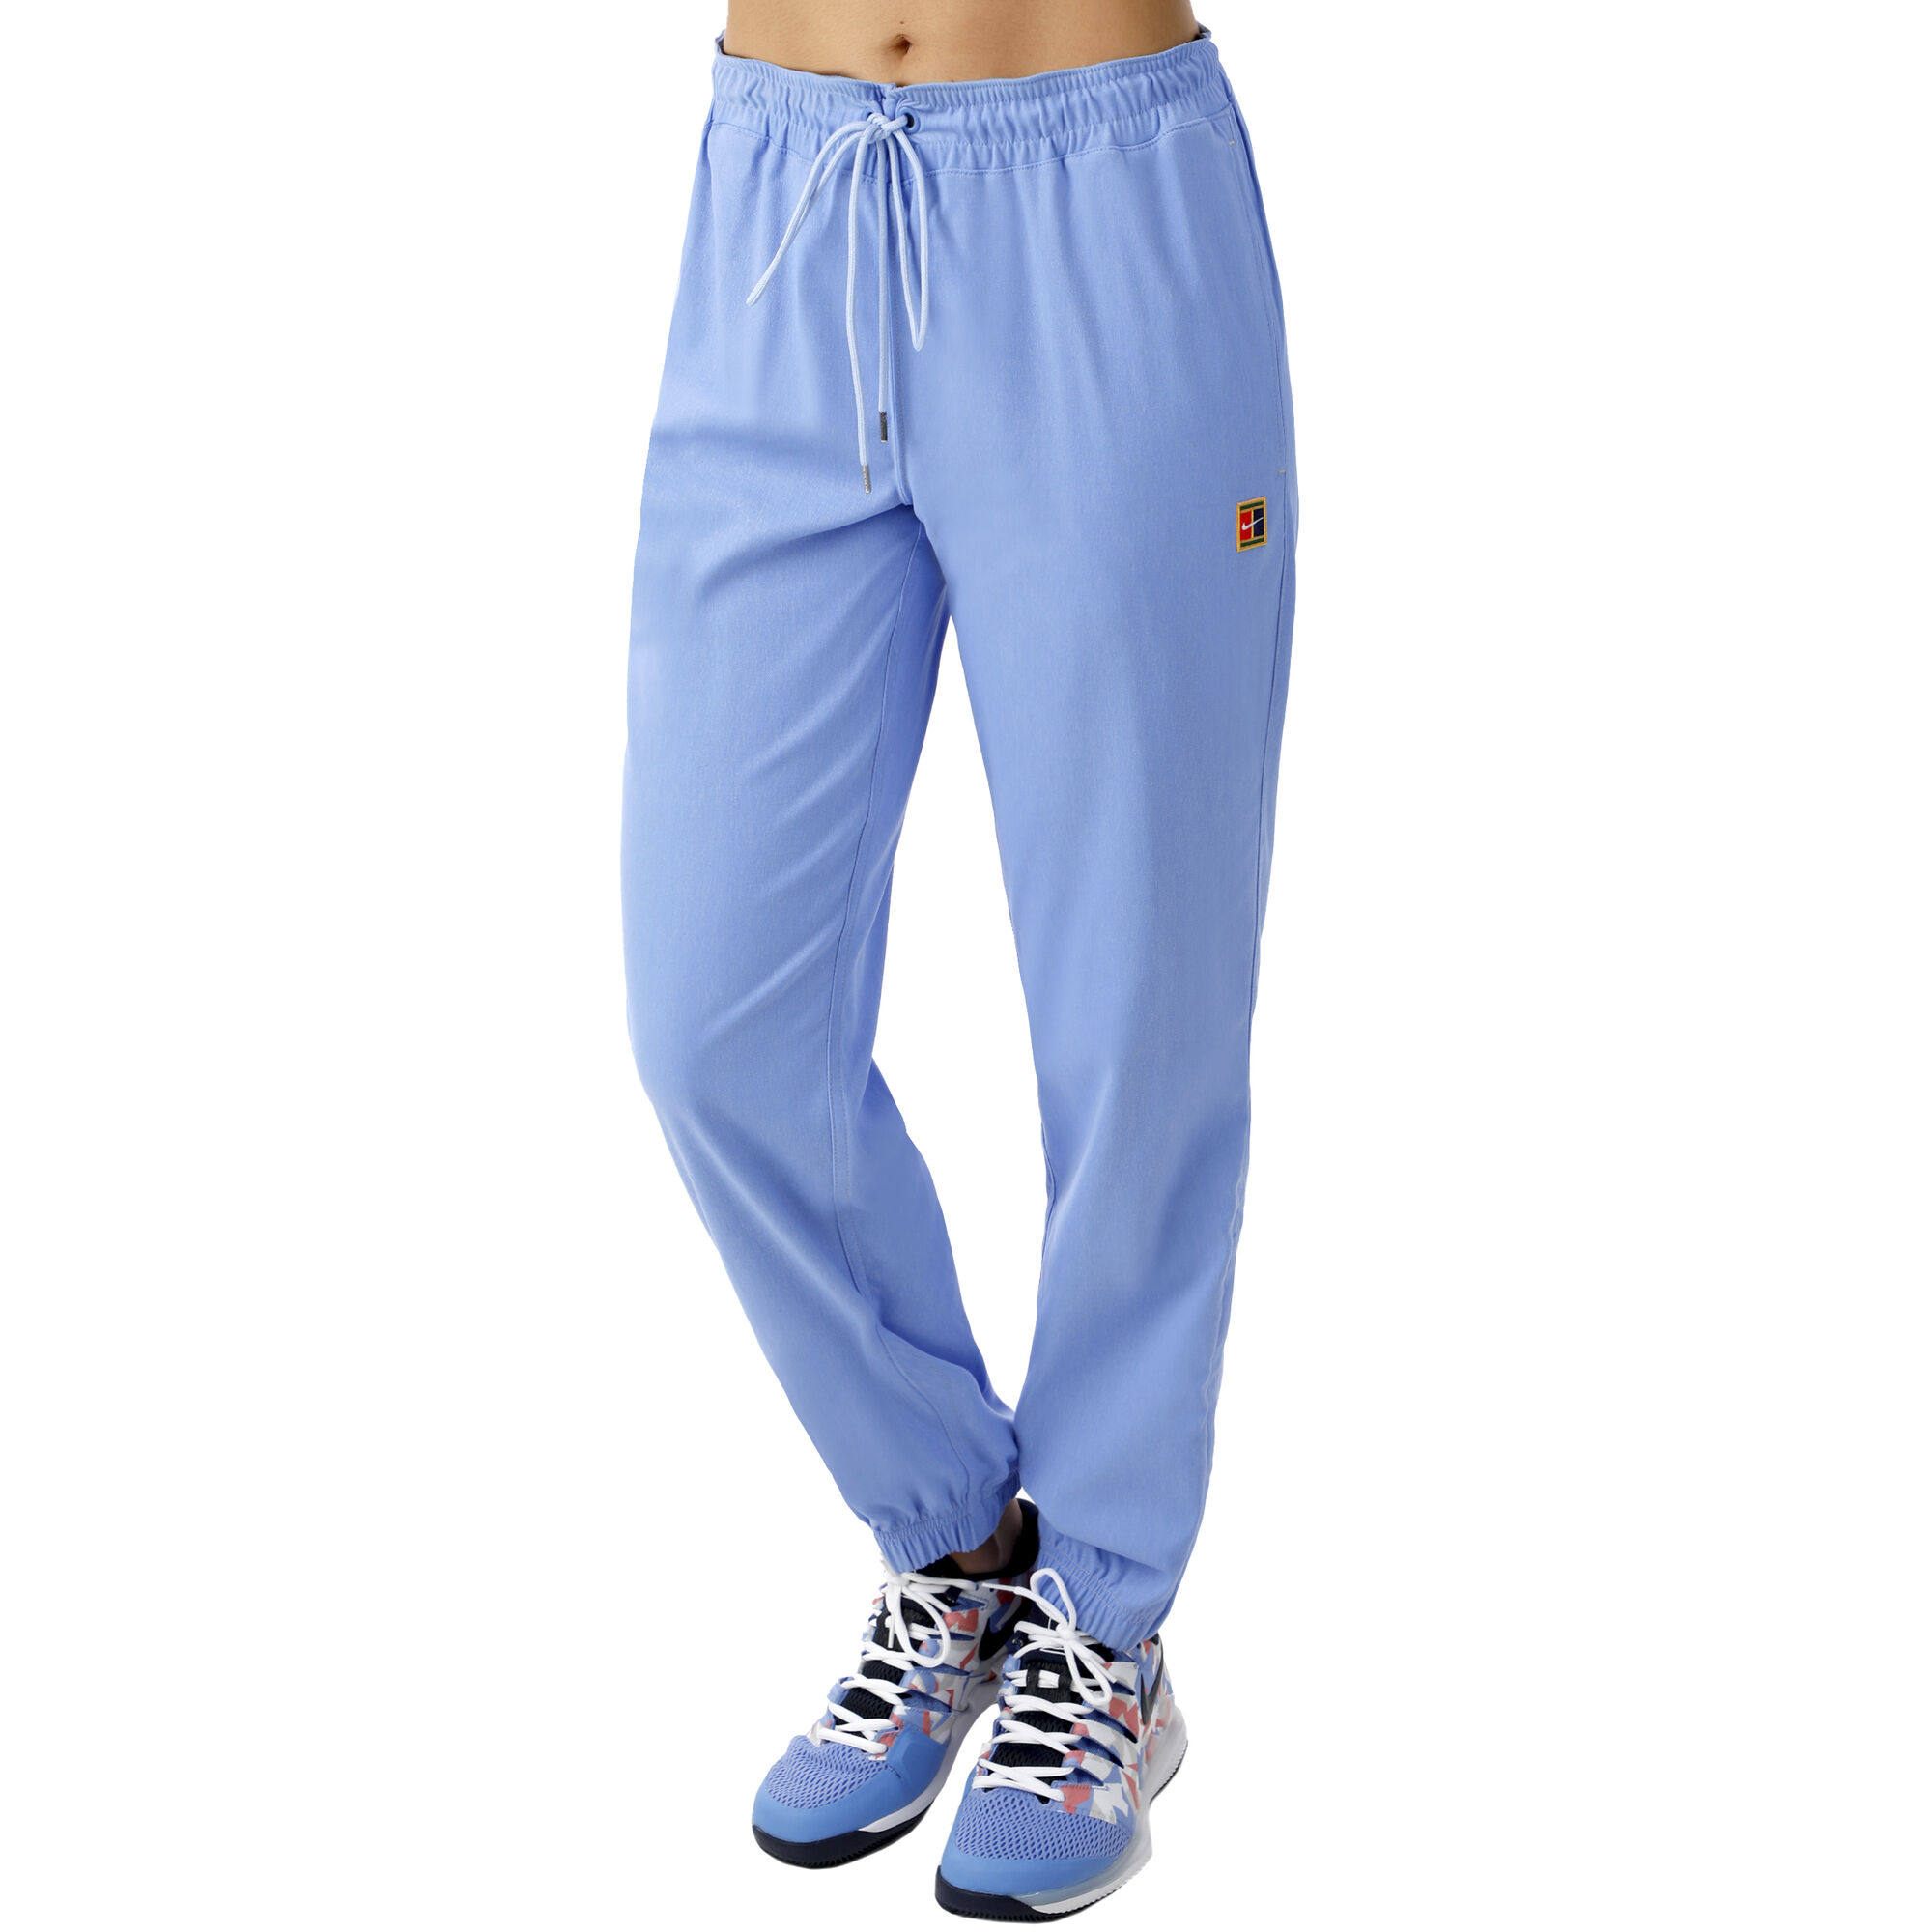 Buy Nike Court Training Pants Women Light Blue, Multicoloured online